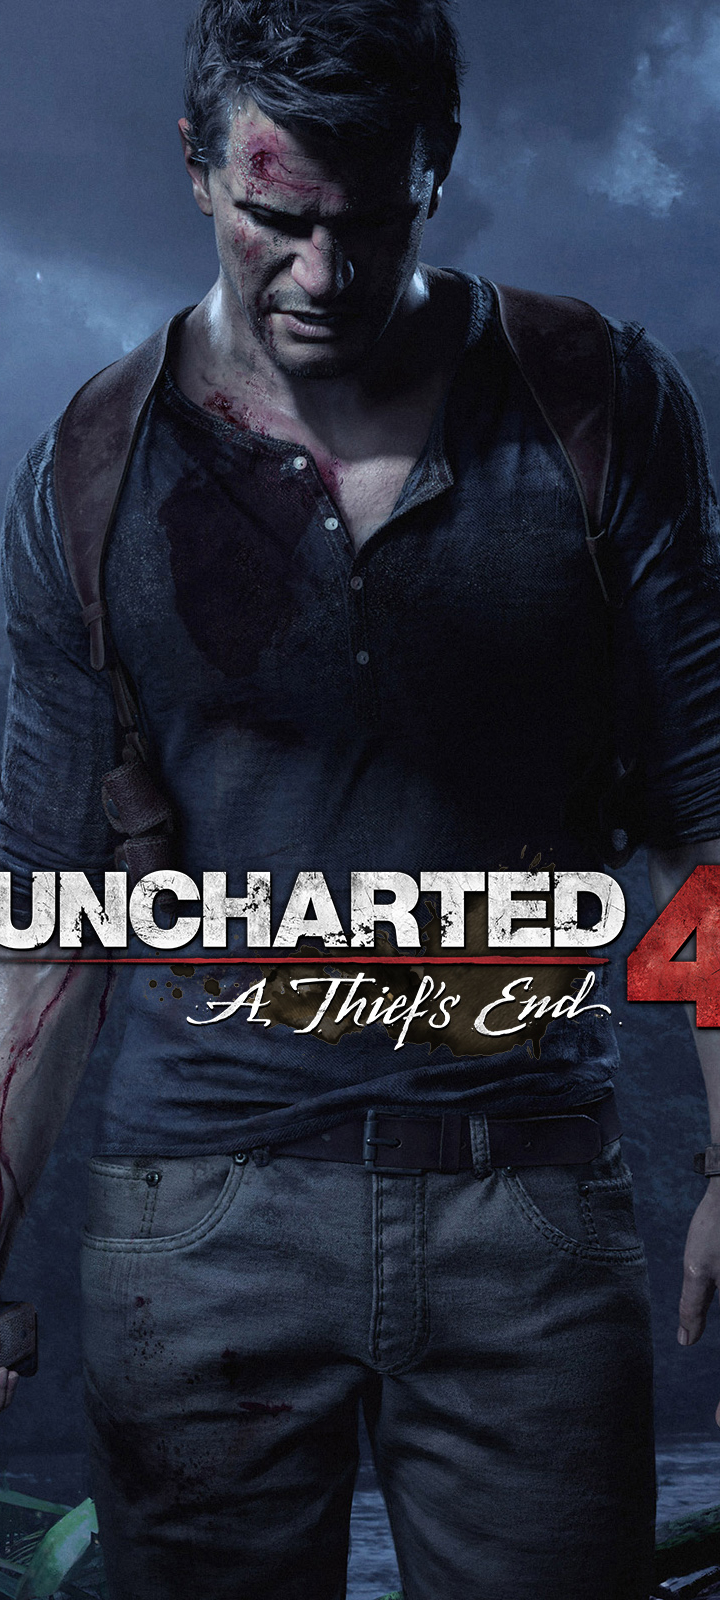 Descarga gratuita de fondo de pantalla para móvil de Inexplorado, Videojuego, Uncharted 4: El Final Del Ladrón.